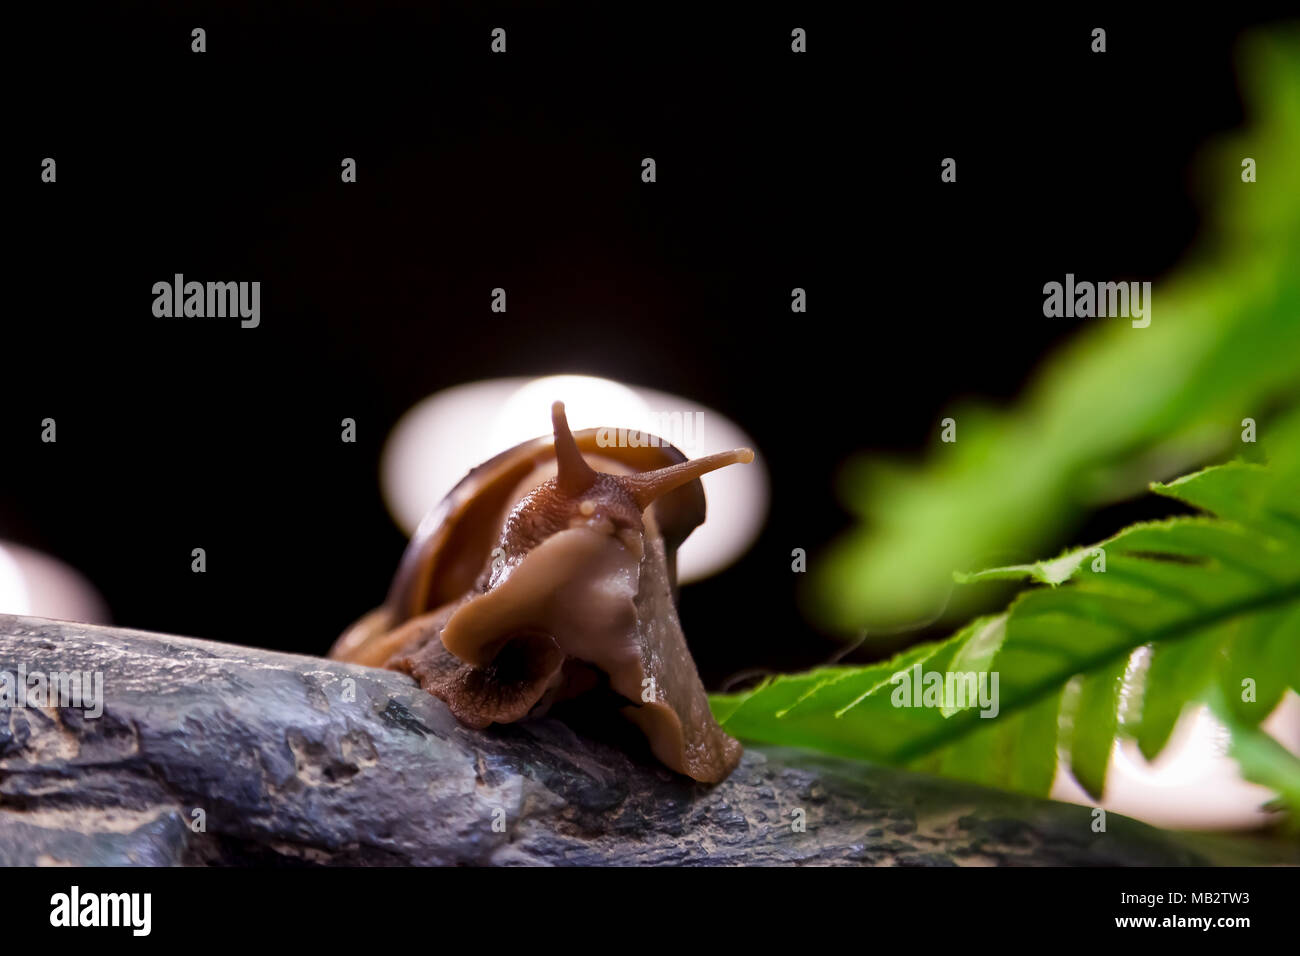 Nahaufnahme einer Zimt Schnecke oder Gastropoda sitzt auf einem Holz- niederlassung in einem Käfig, eine Ansicht von unten Stockfoto